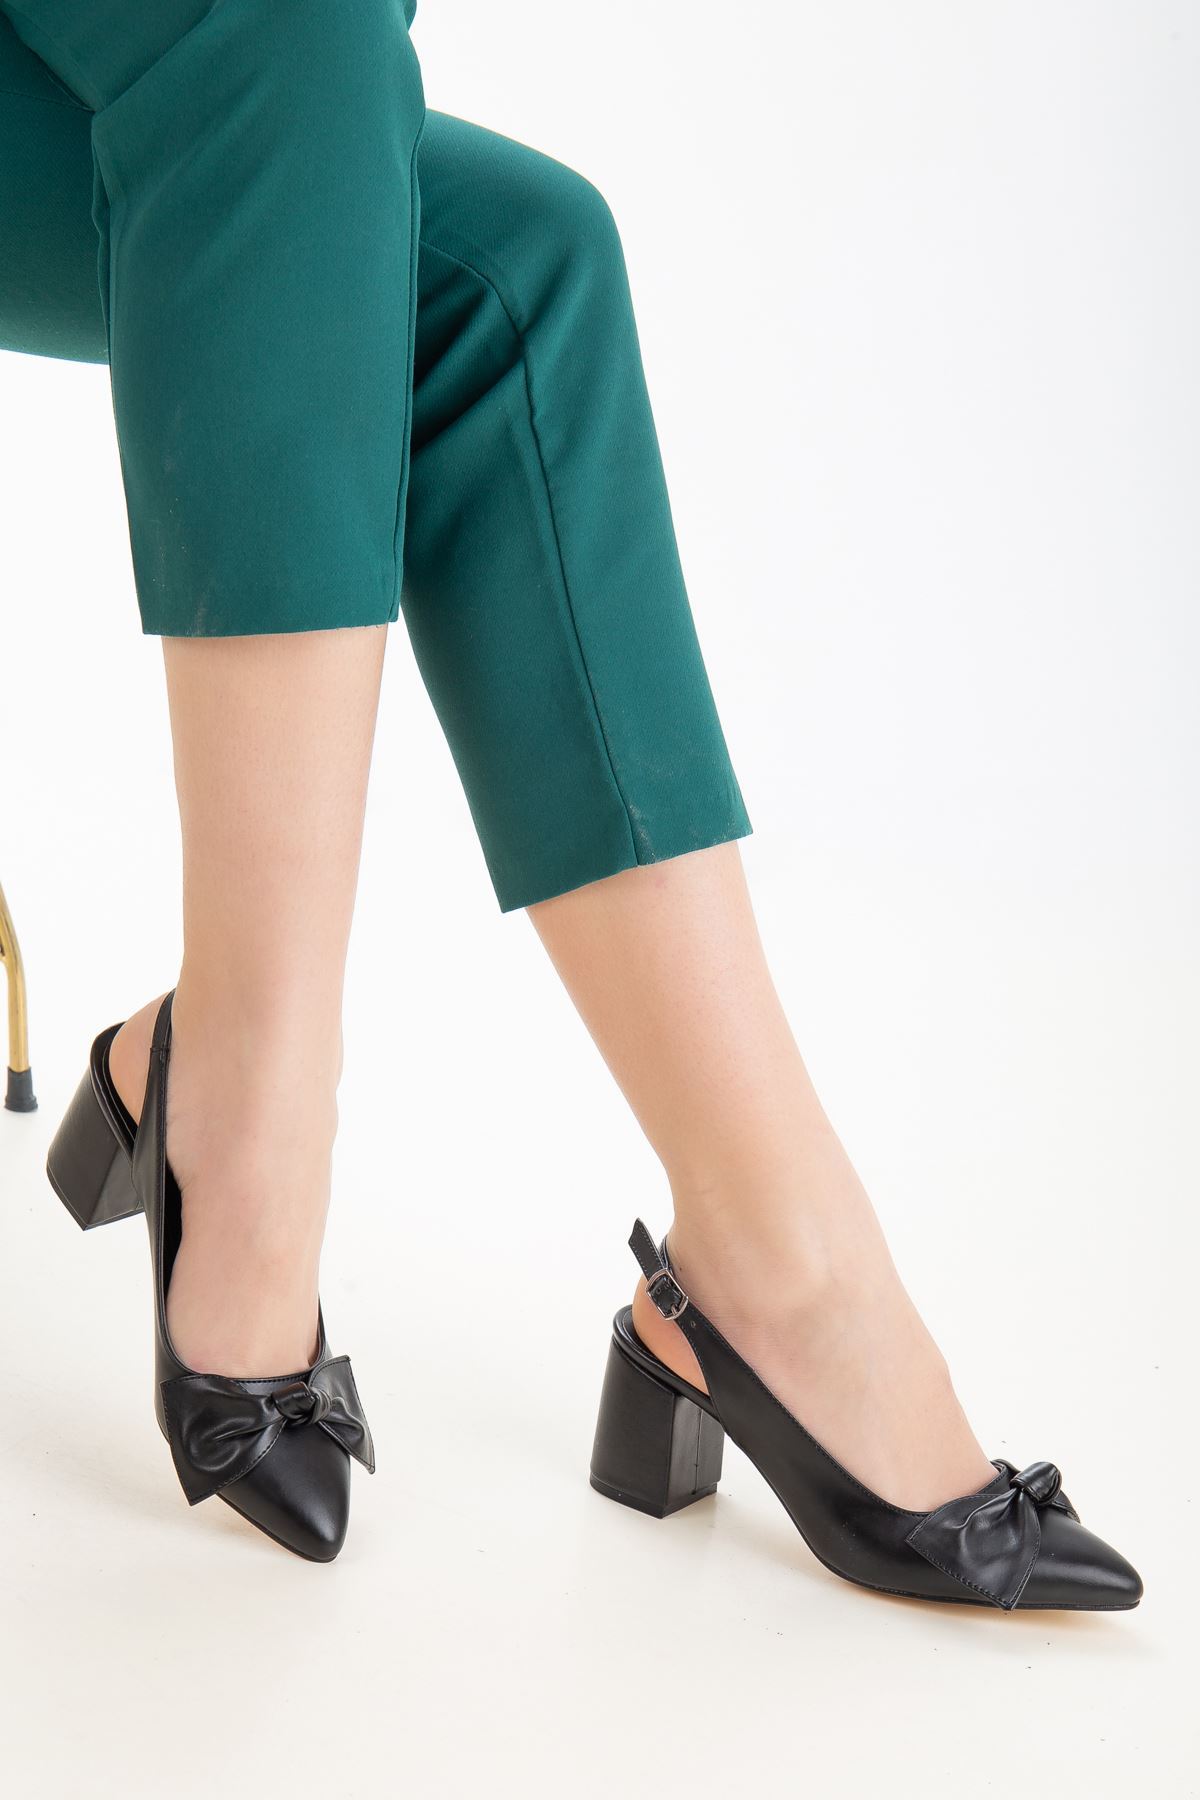 Dear Kadın Kurdele Detaylı Topuklu Ayakkabı Siyah Cilt